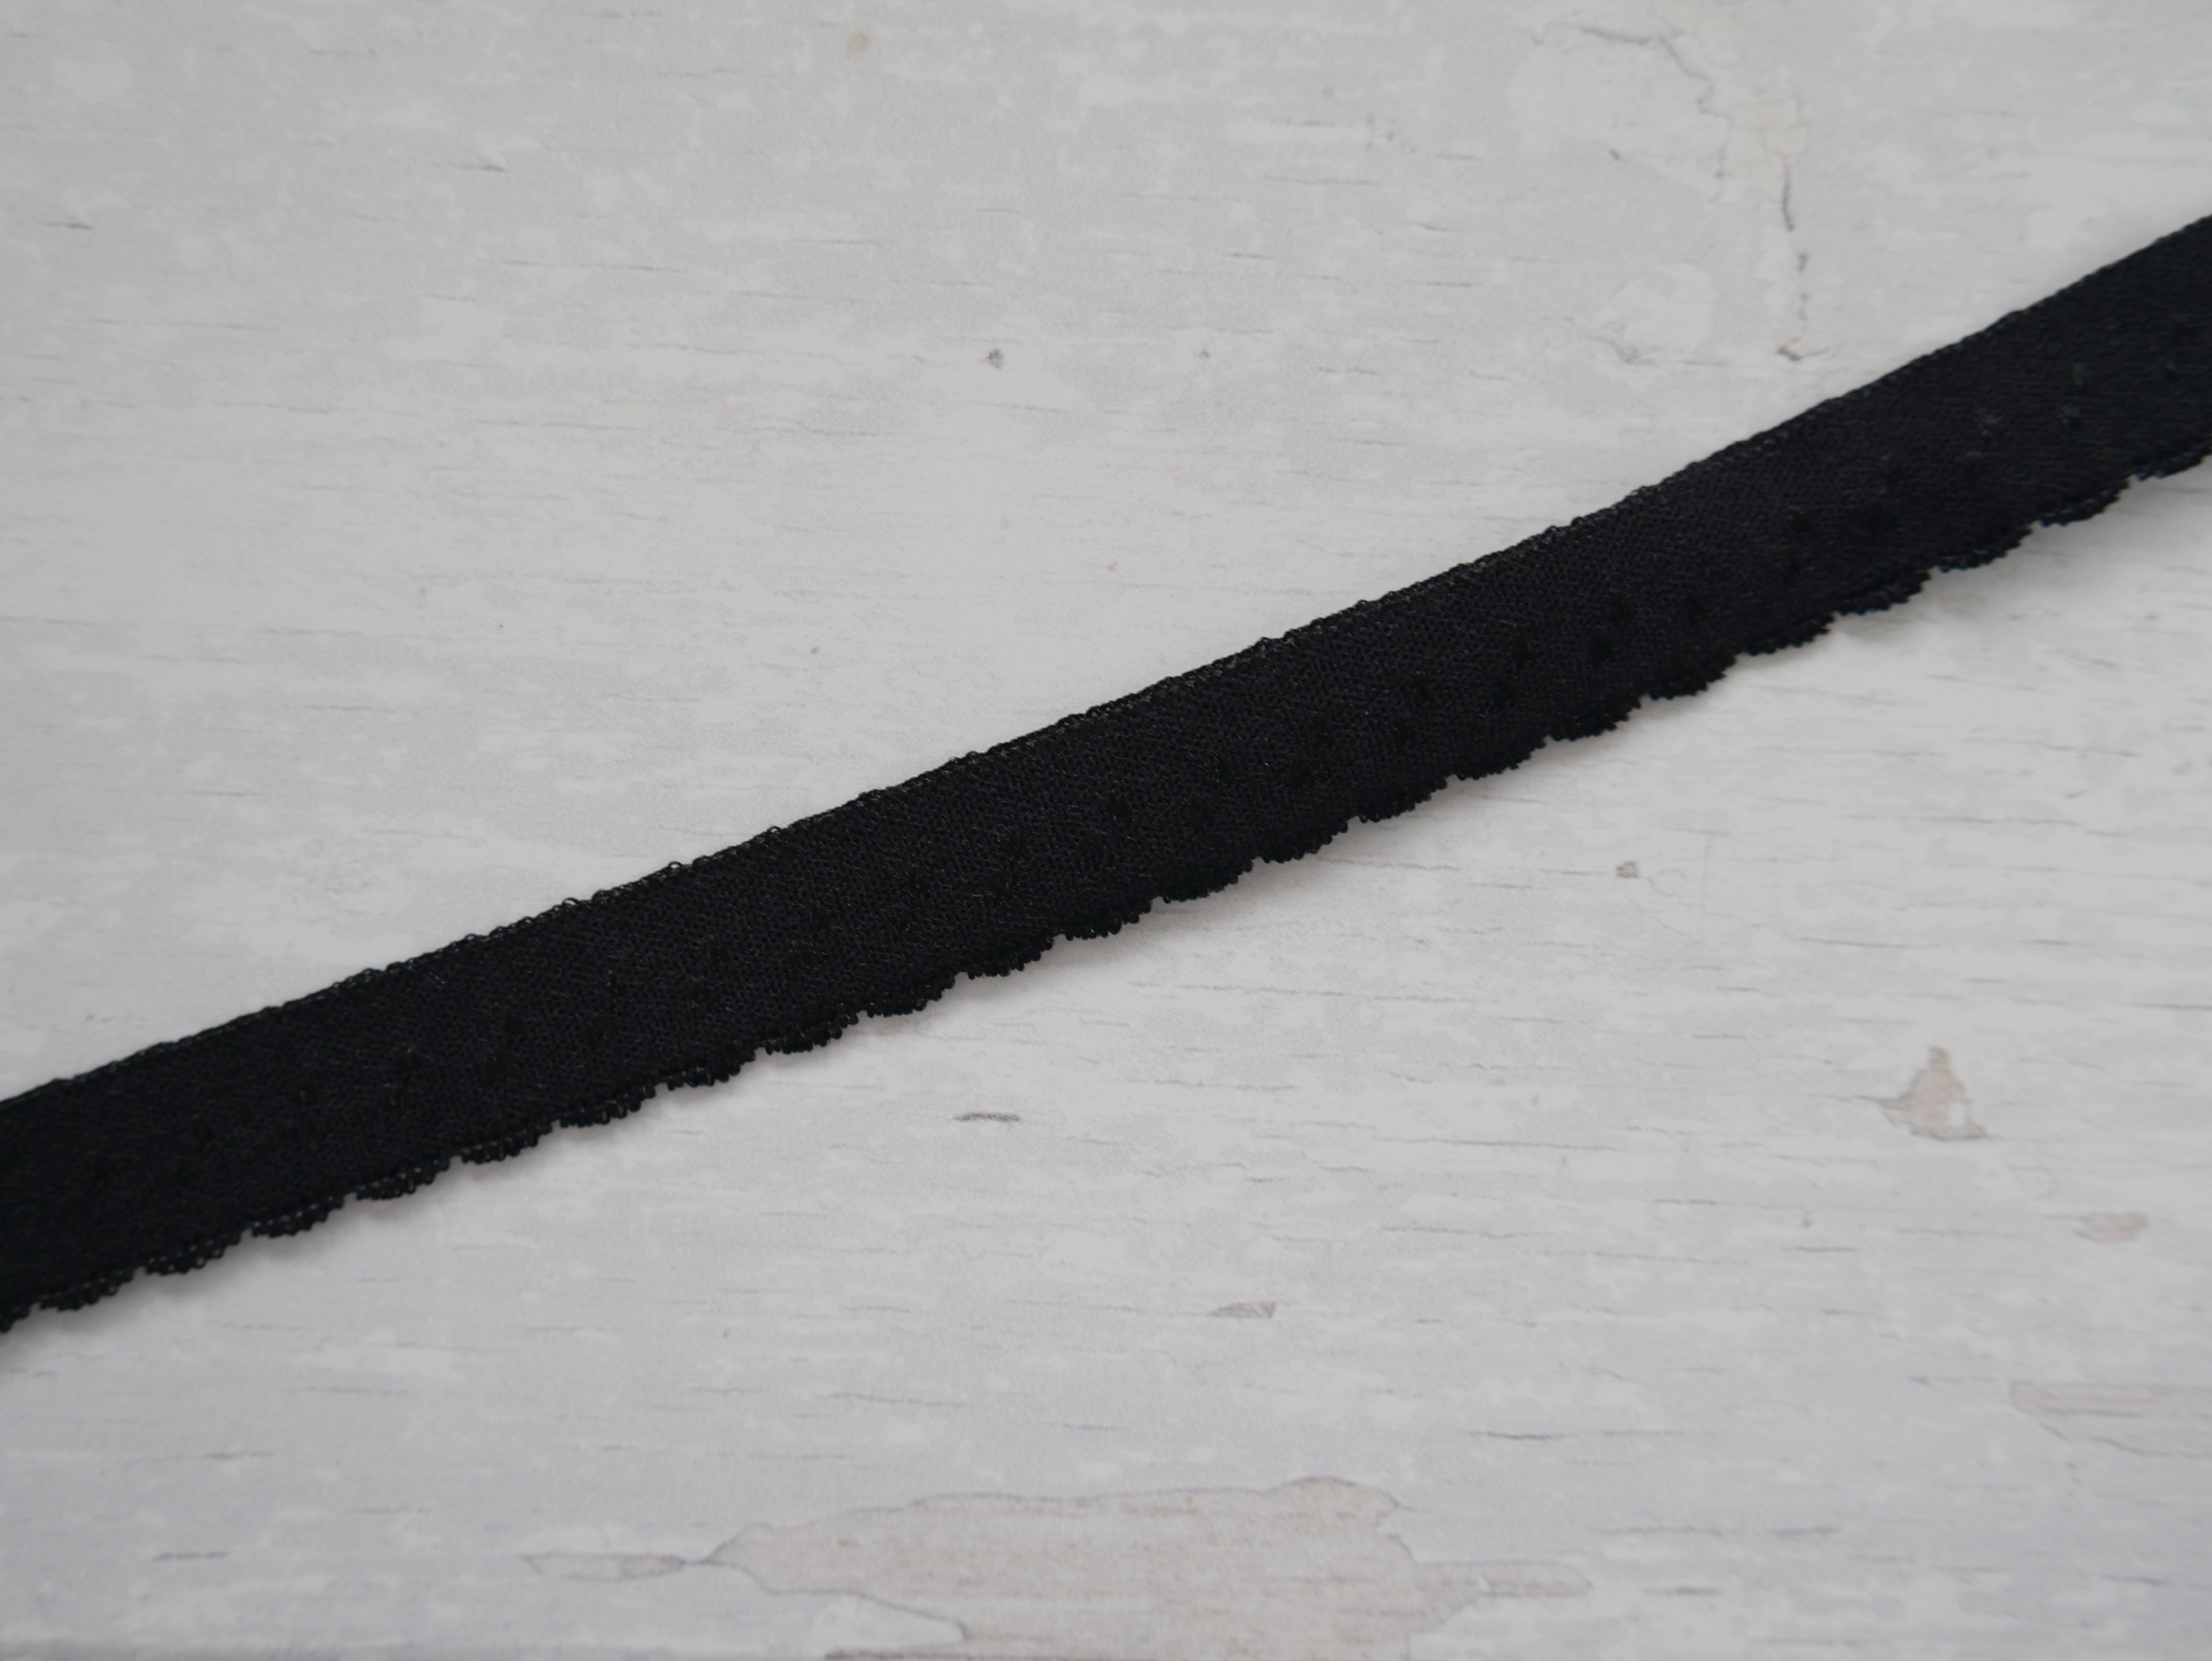 12mm Scalloped Fold Over Elastic - Black-Haberdashery-Flying Bobbins Haberdashery